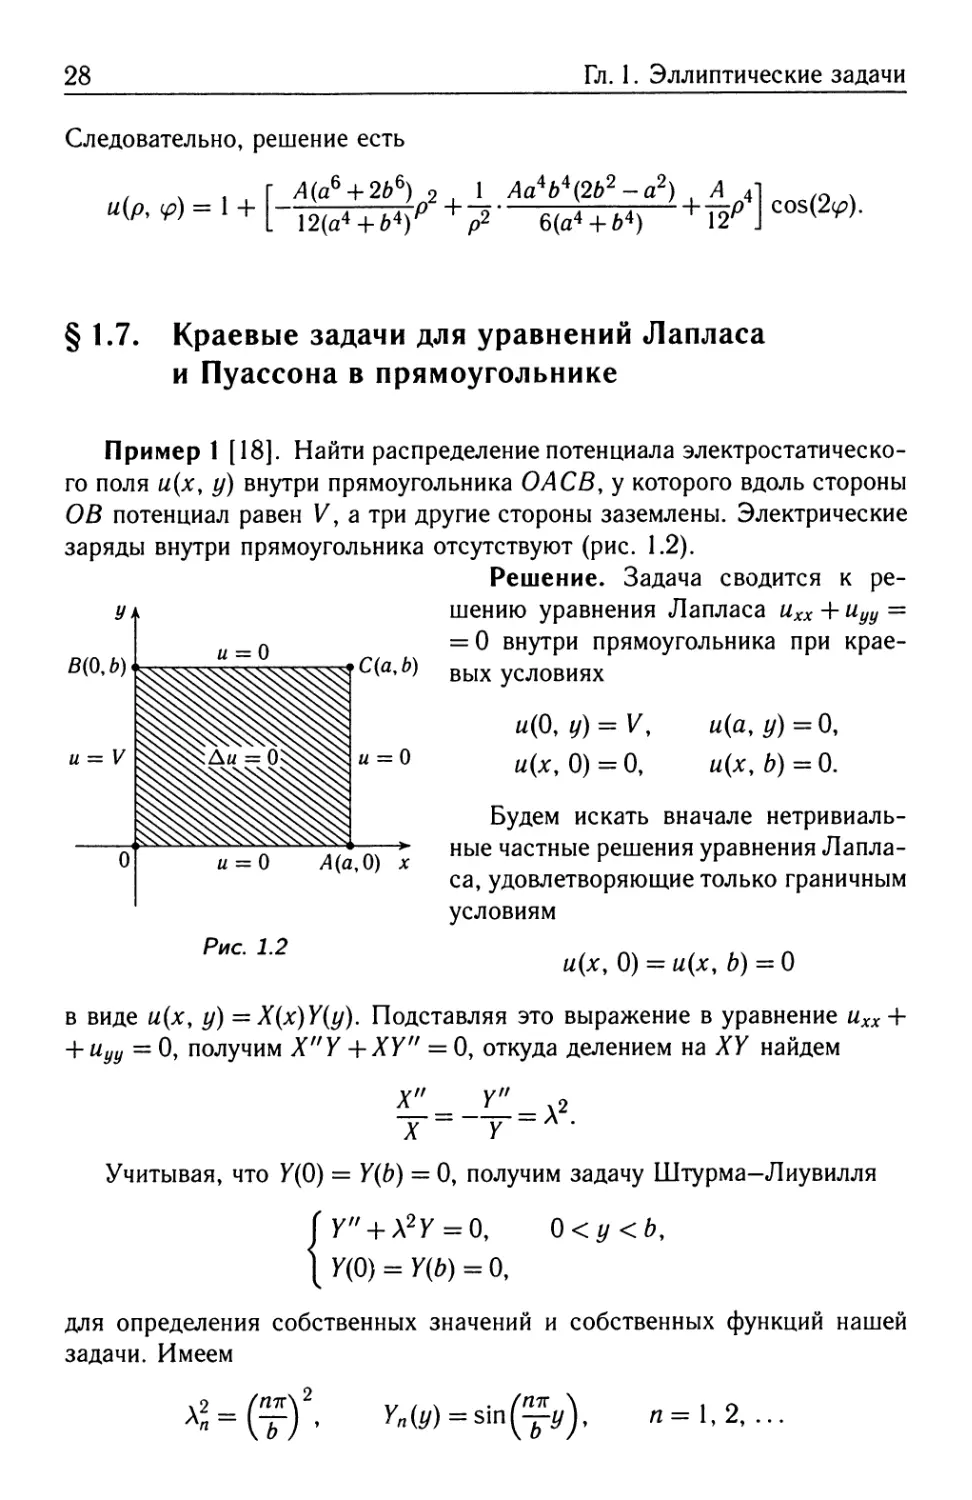 § 1.7. Краевые задачи для уравнений Лапласа и Пуассона в прямоугольнике